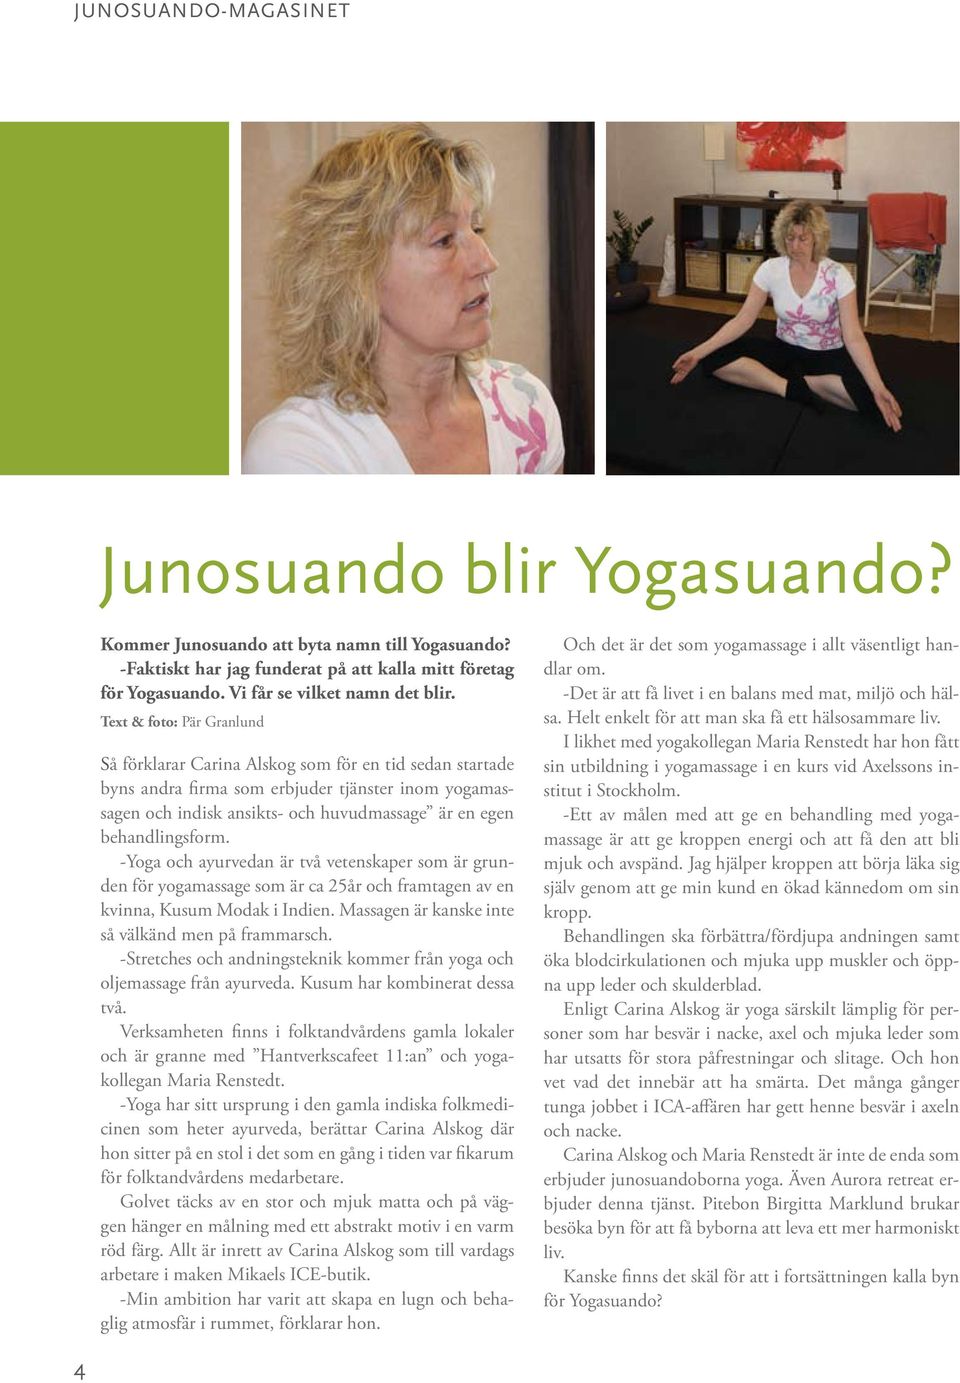 behandlingsform. -Yoga och ayurvedan är två vetenskaper som är grunden för yogamassage som är ca 25år och framtagen av en kvinna, Kusum Modak i Indien.